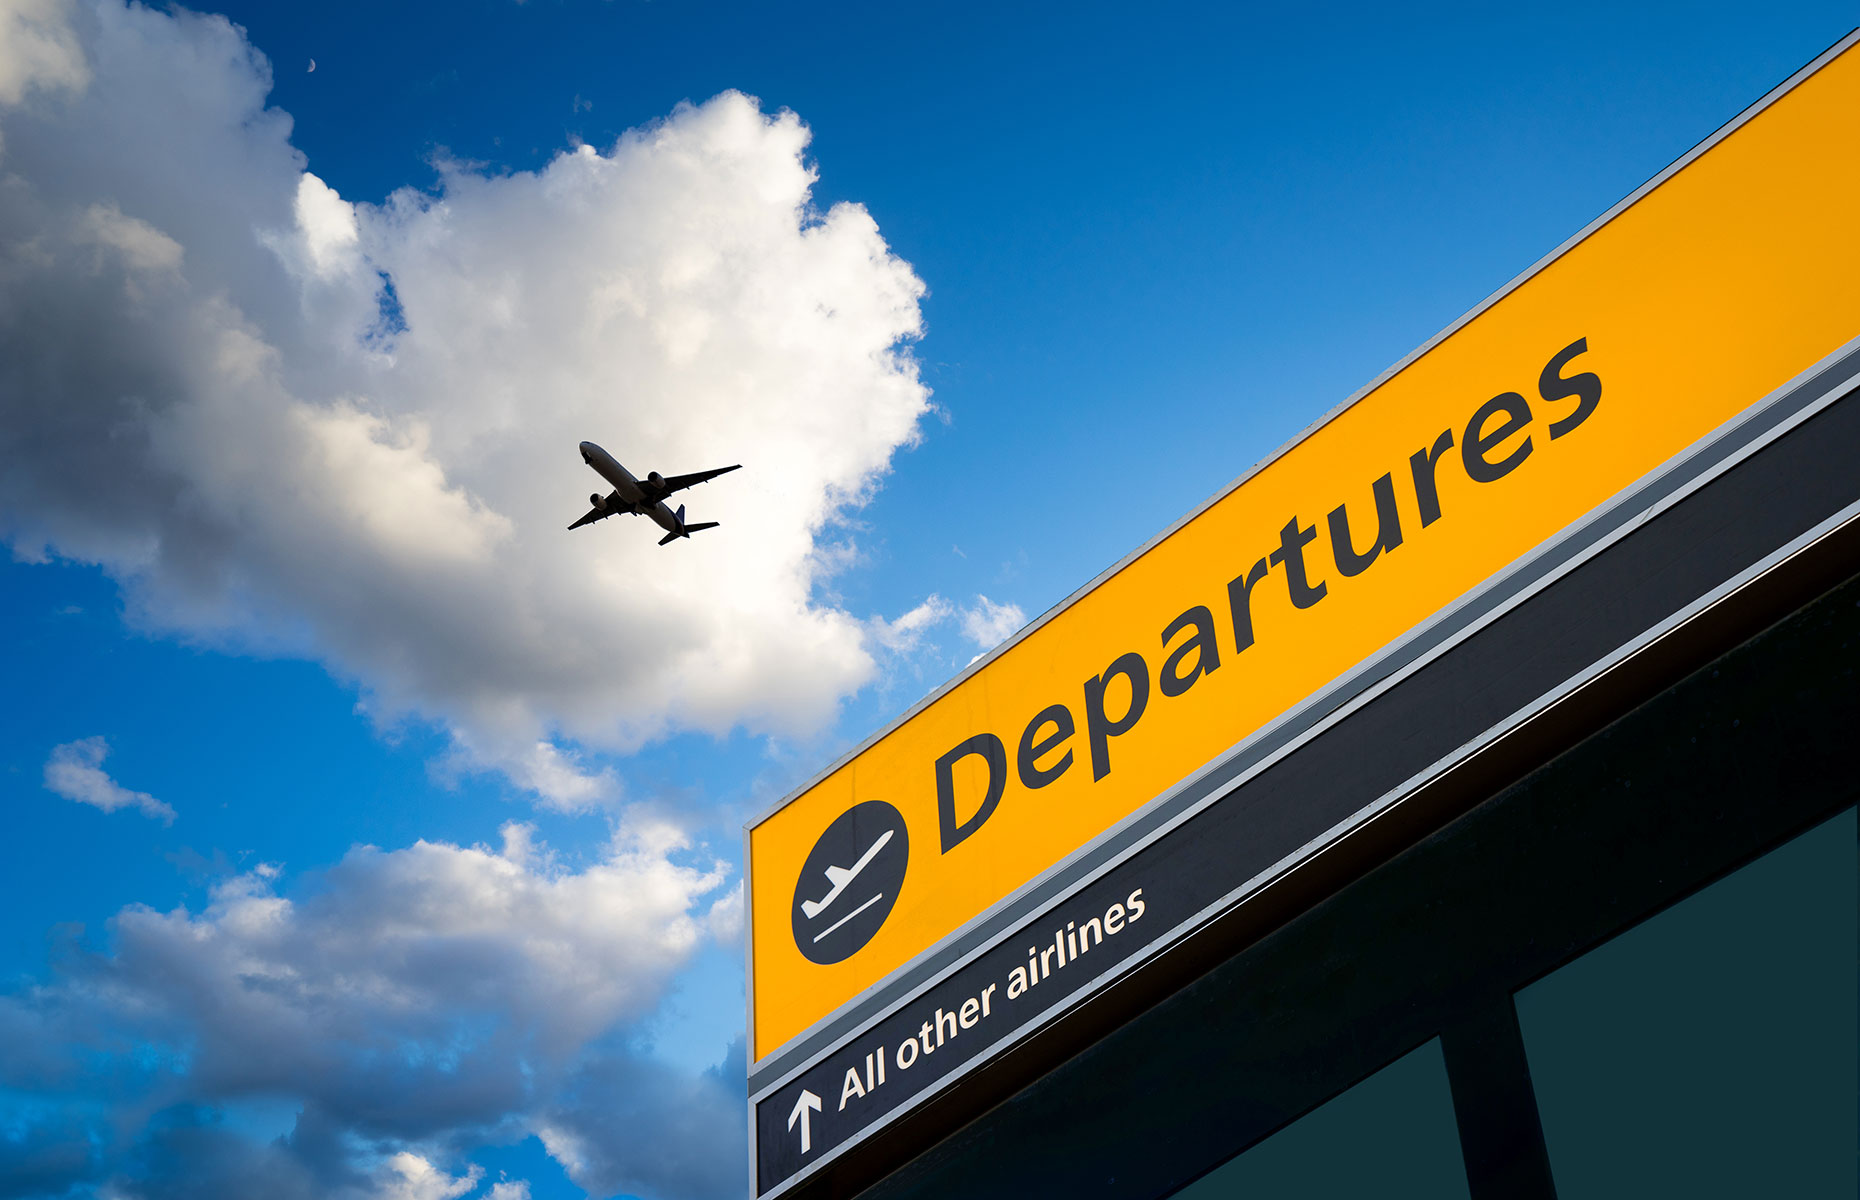 Heathrow departures (Image: alice-photo/Shutterstock)